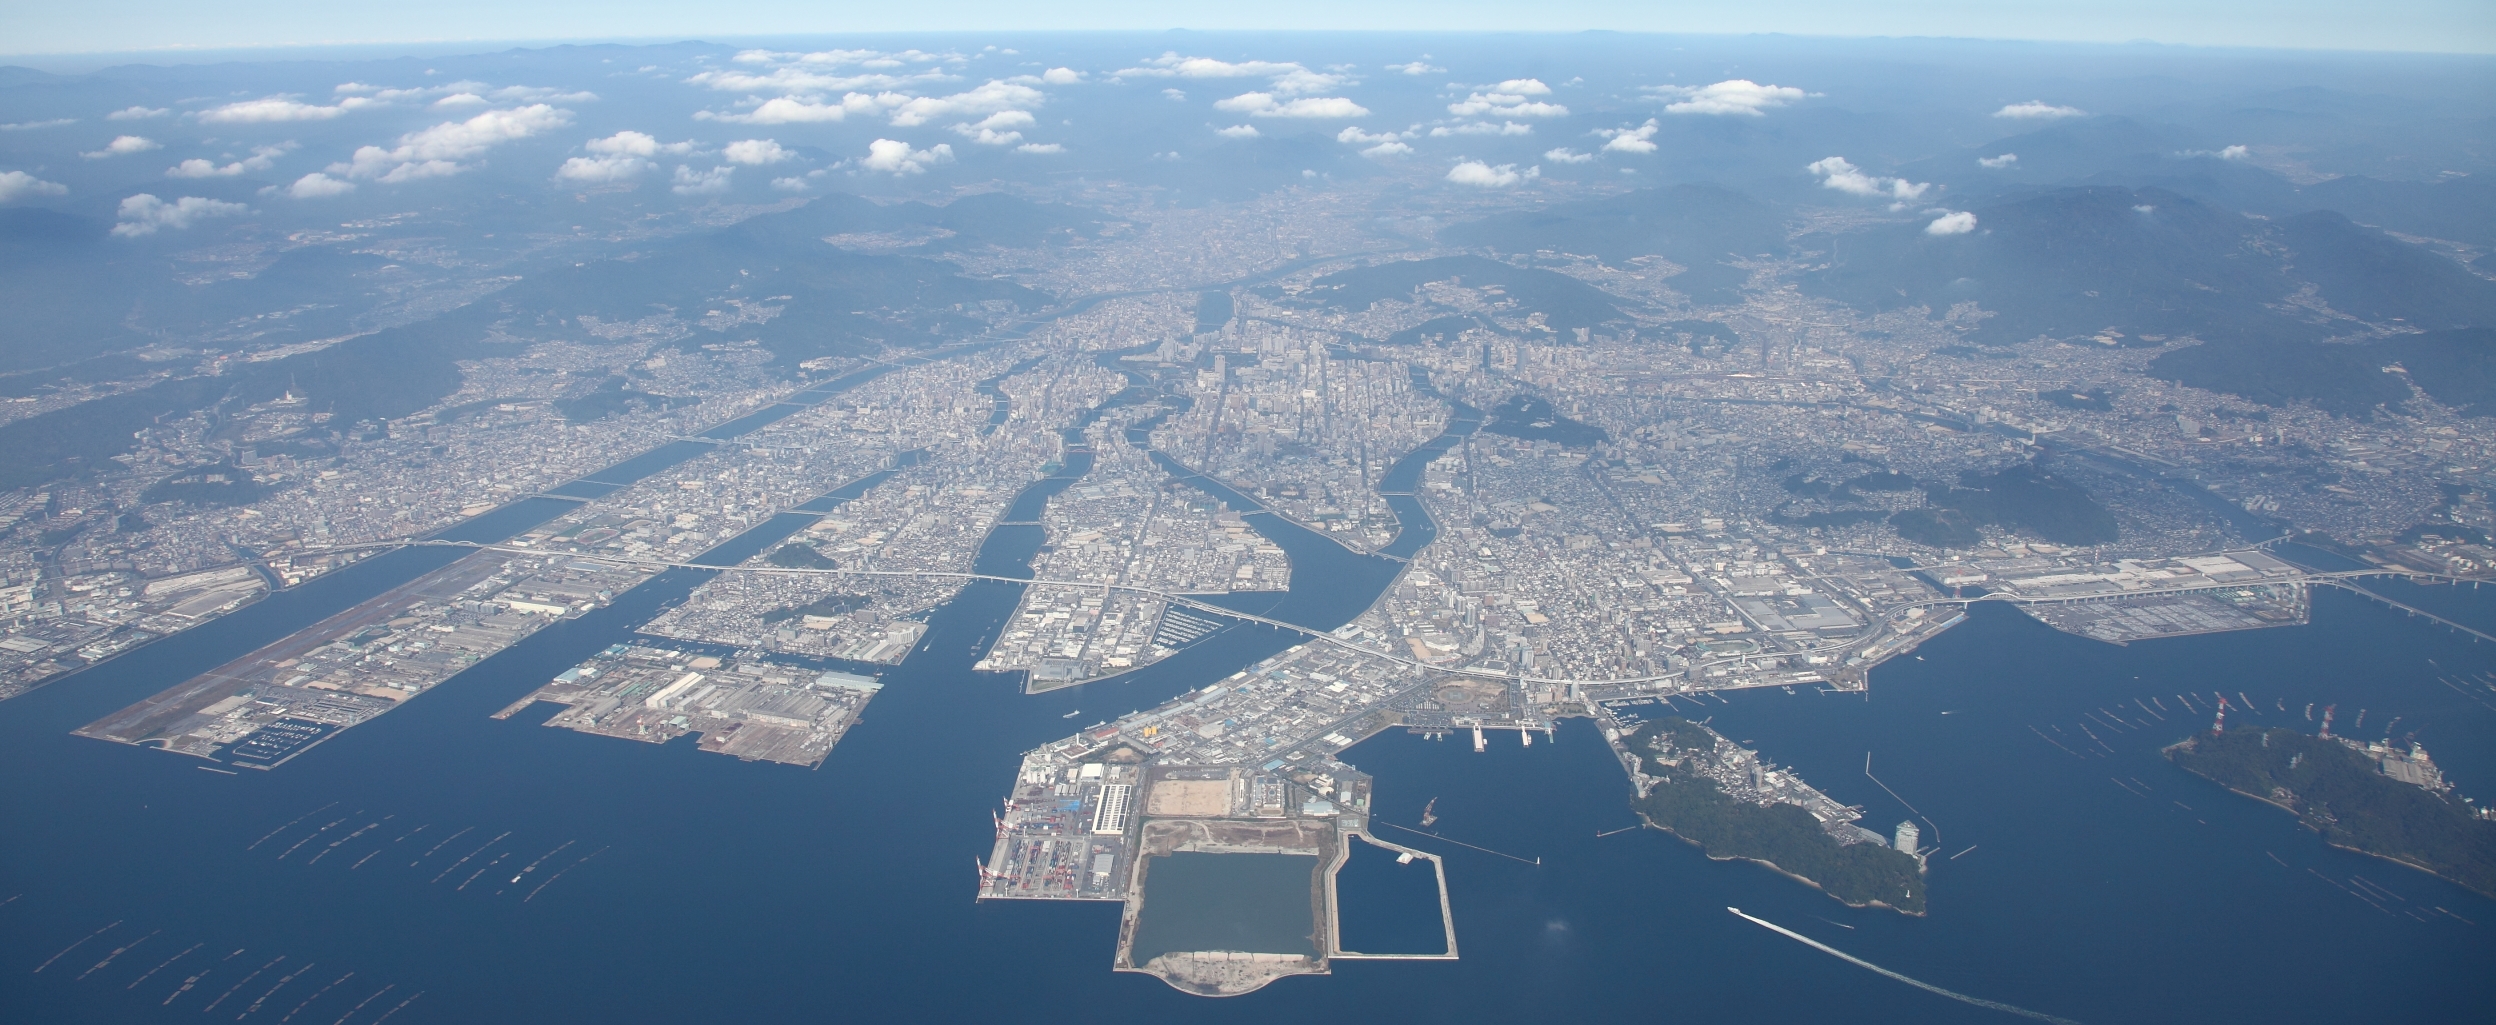 広島港湾振興事務所のホームページ